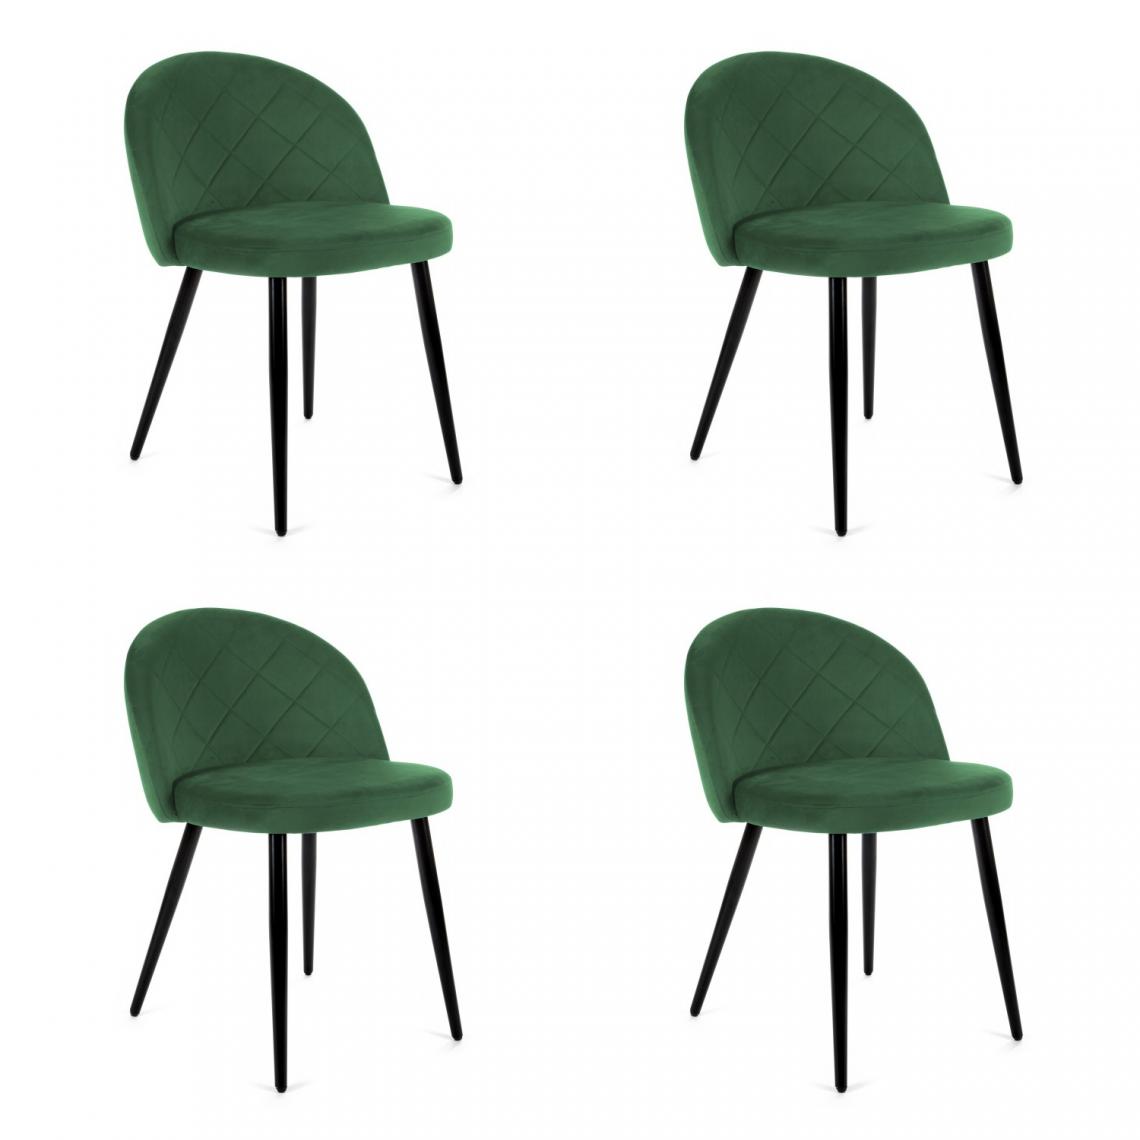 Hucoco - MORLI - Chaise rembourrée 4 pcs style moderne salon/salle à manger - 76x53x43 - Pieds en métal - Vert - Chaises